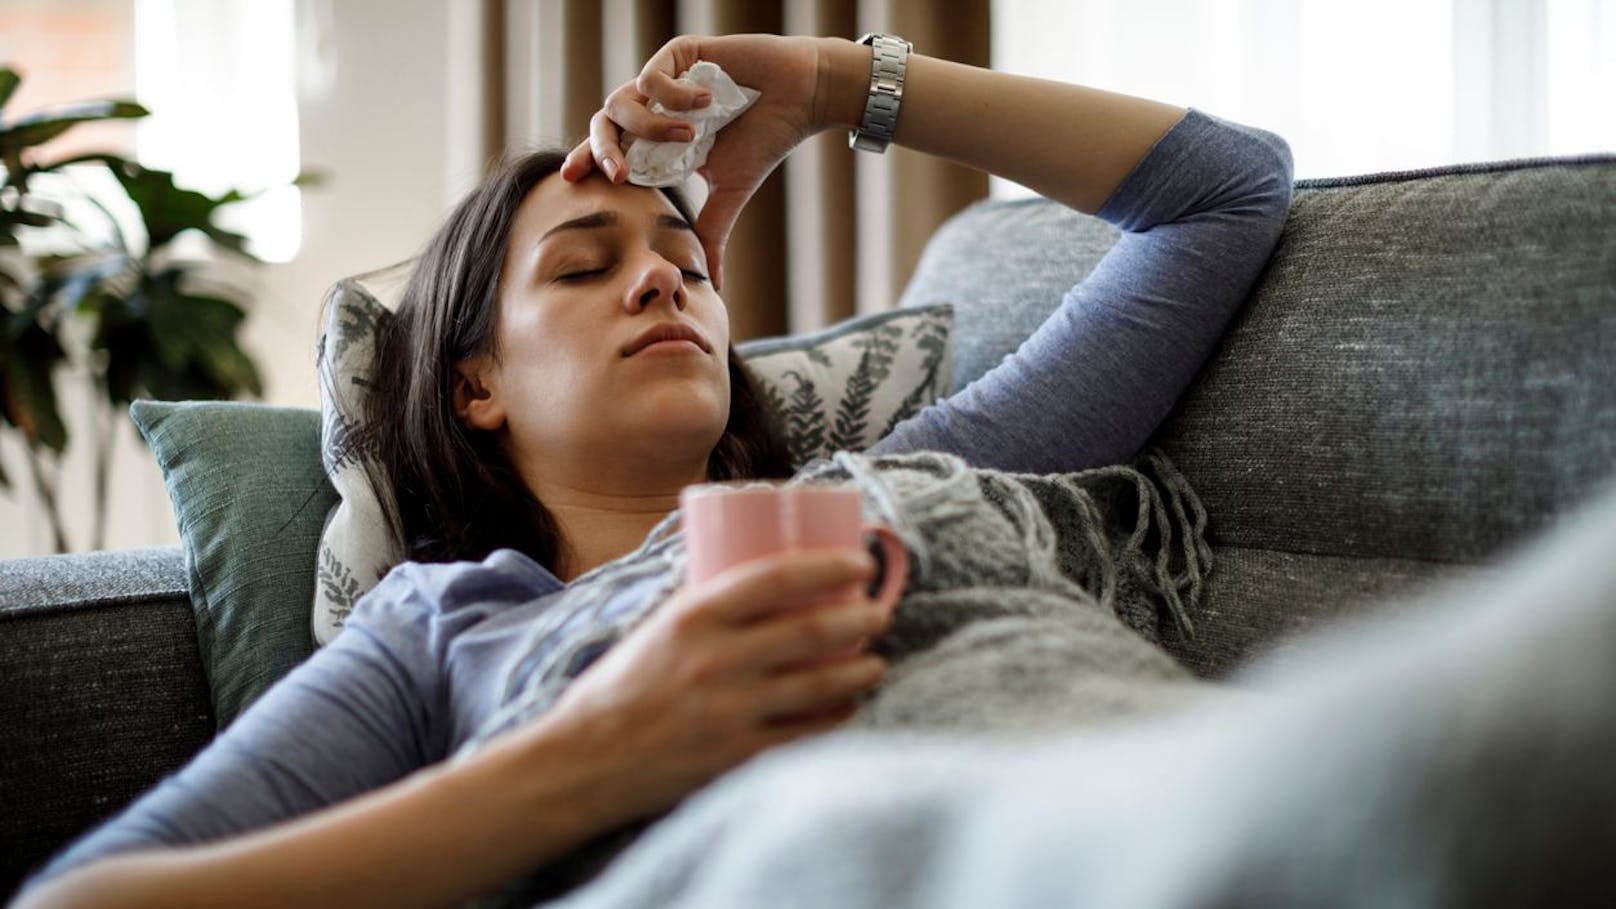 Erkältungs- und Grippeviren verbreiten sich leicht. Man fängt sich eine Erkältung oder Grippe ein, indem man Partikel des Virus einatmet, oder durch das Berühren von kontaminierten Oberflächen, zb. Türschnallen und anschließendes Berühren von Mund, Nase oder Augen. Inkubationszeit sind 12 Stunden bis 3 Tage nach Ansteckung. Erkrankte sind 1-2 Tage vor und bis zu 14 Tage nach beginn der ersten Symptome ansteckend. In den ersten 3 Tagen nach Beginn der Symptome ist man am ansteckendsten, dann nimmt die Ansteckungsgefahr nach und nach ab.